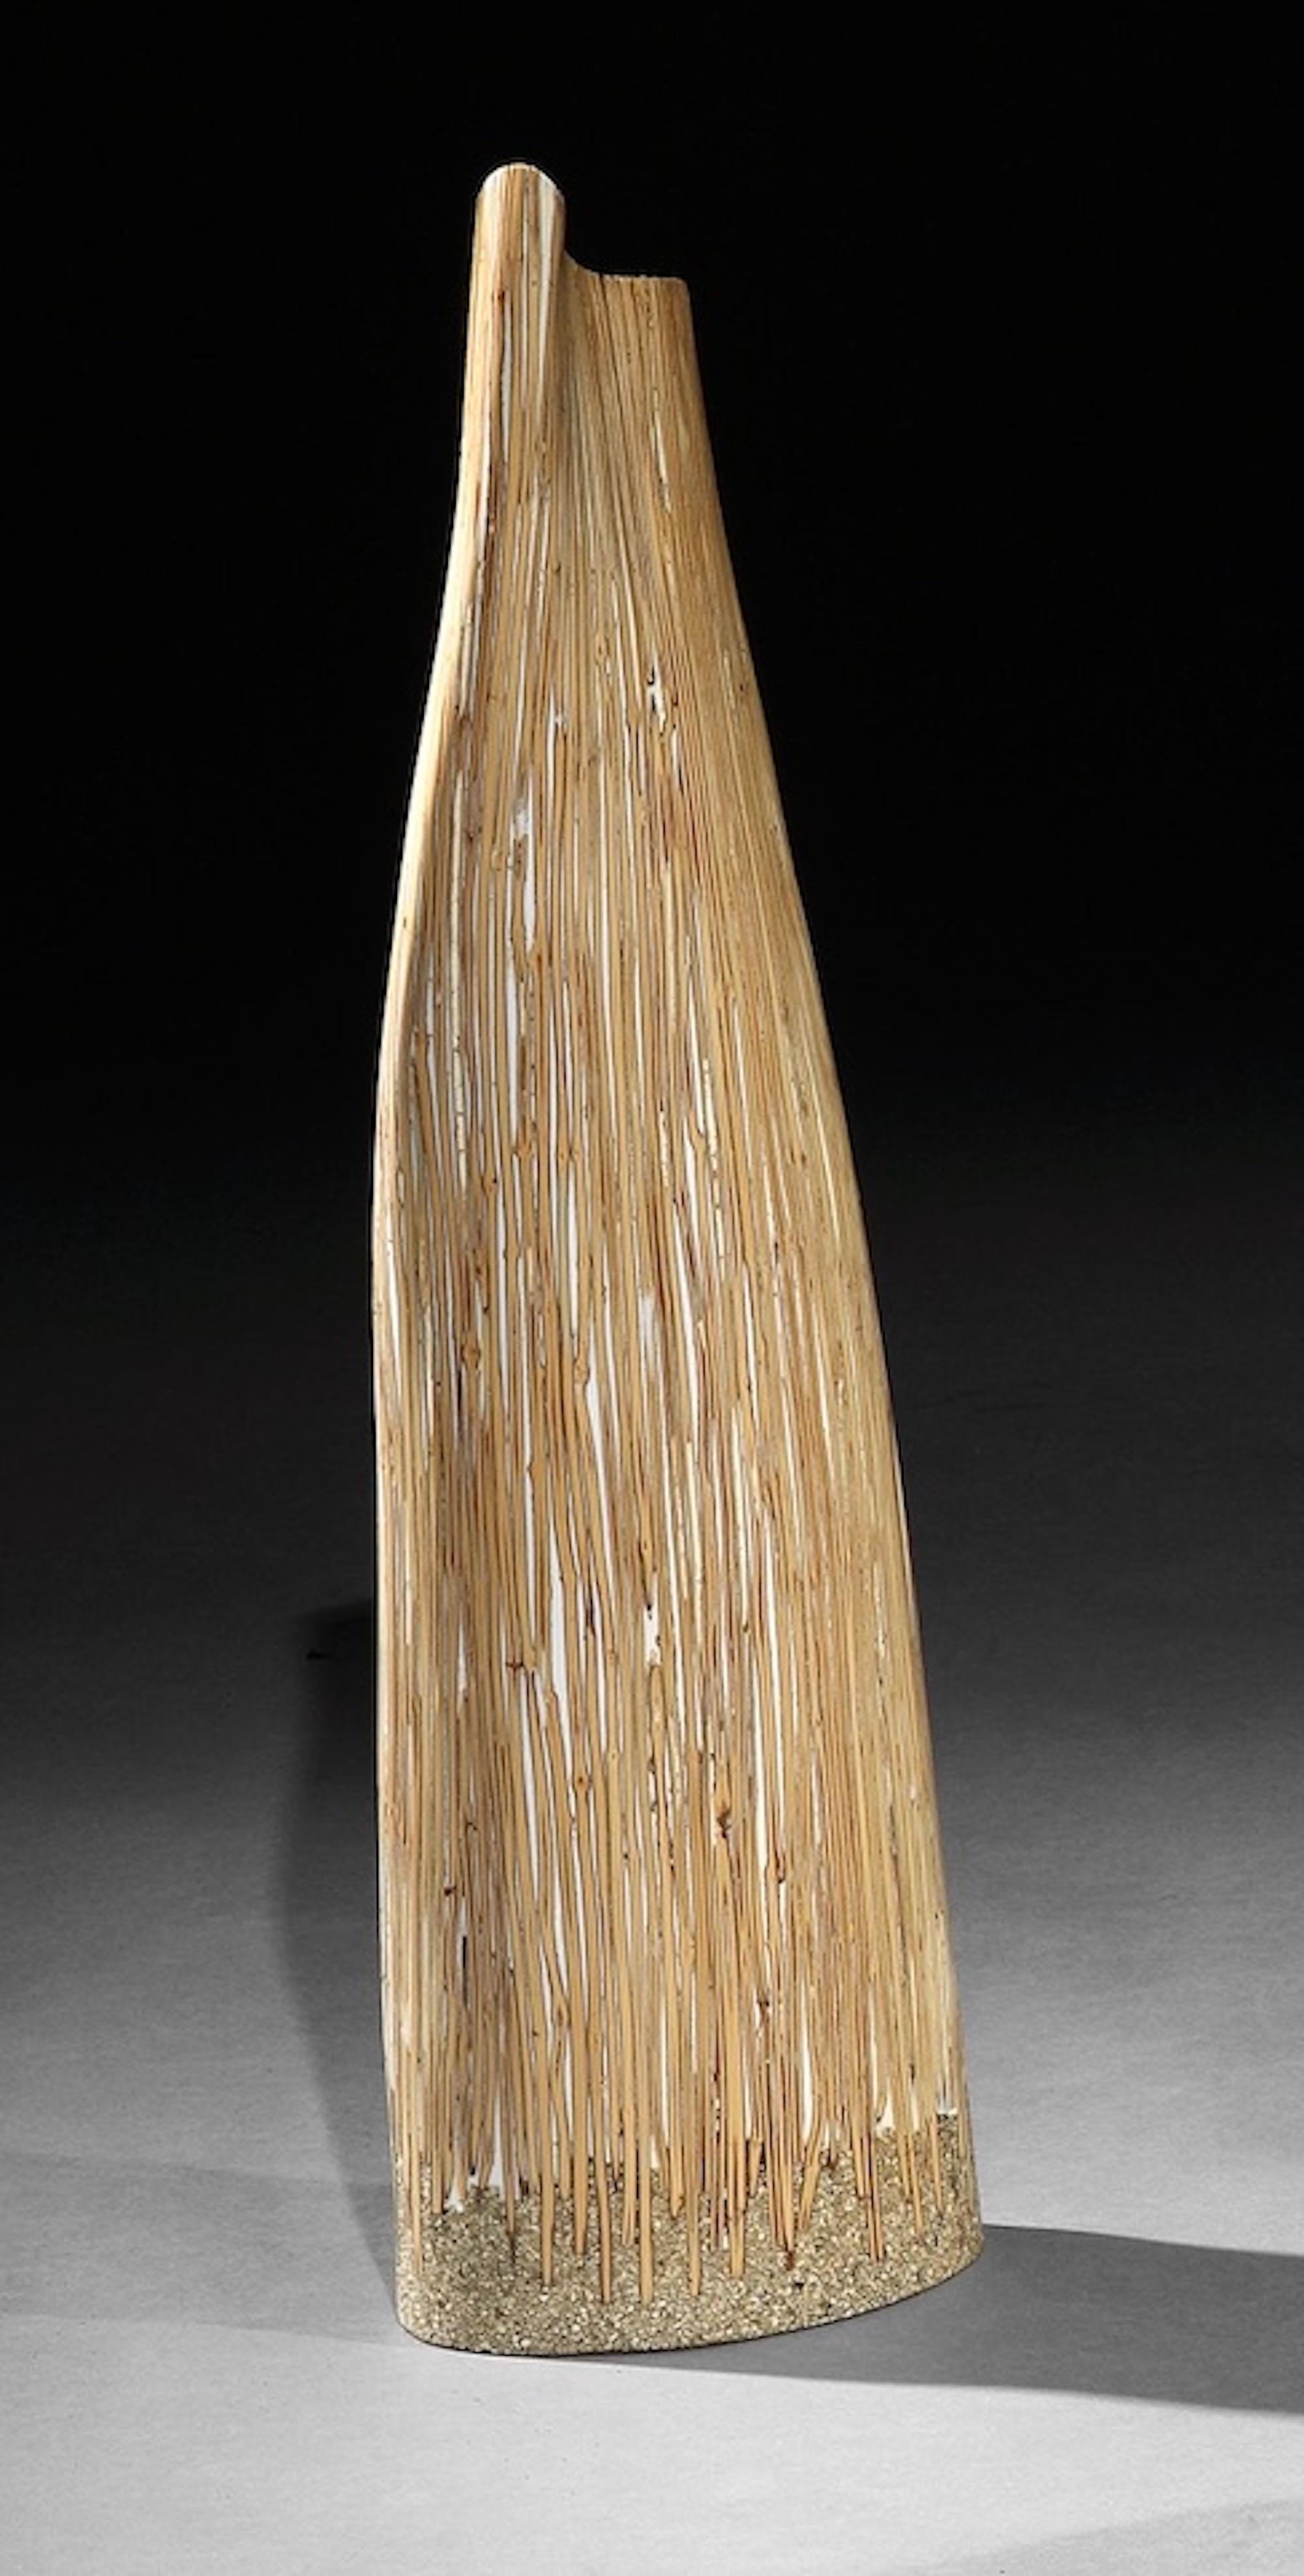 Lusia Robinson : Sculpture en bambou
Cette sculpture est caractéristique du travail de Robinson qui met l'accent sur la matérialité dans la forme en intégrant des matériaux indigènes à la technologie et aux applications modernes.

- La forme